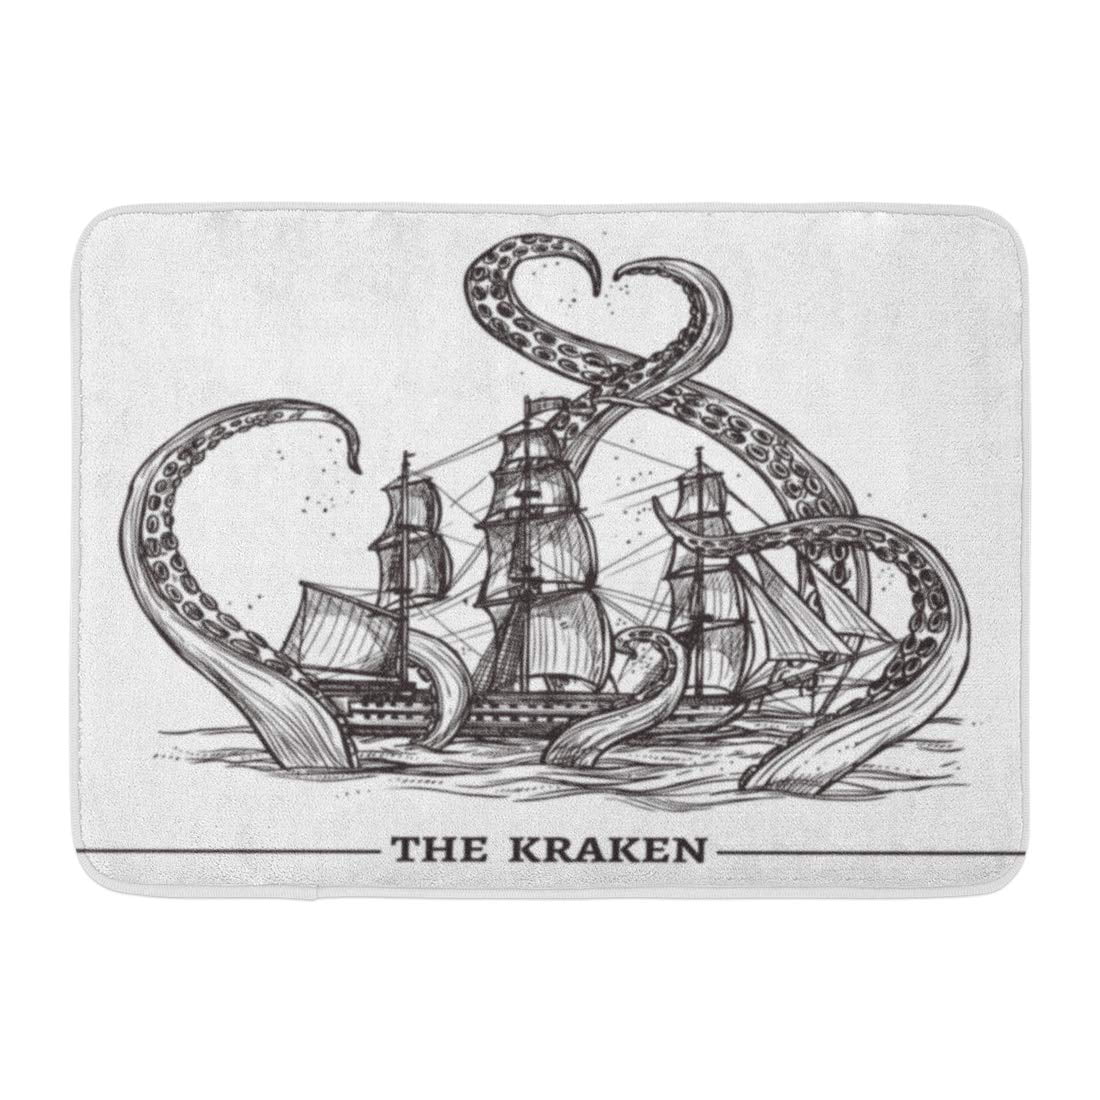 The Kraken Cool Vintage Rubber Doormat